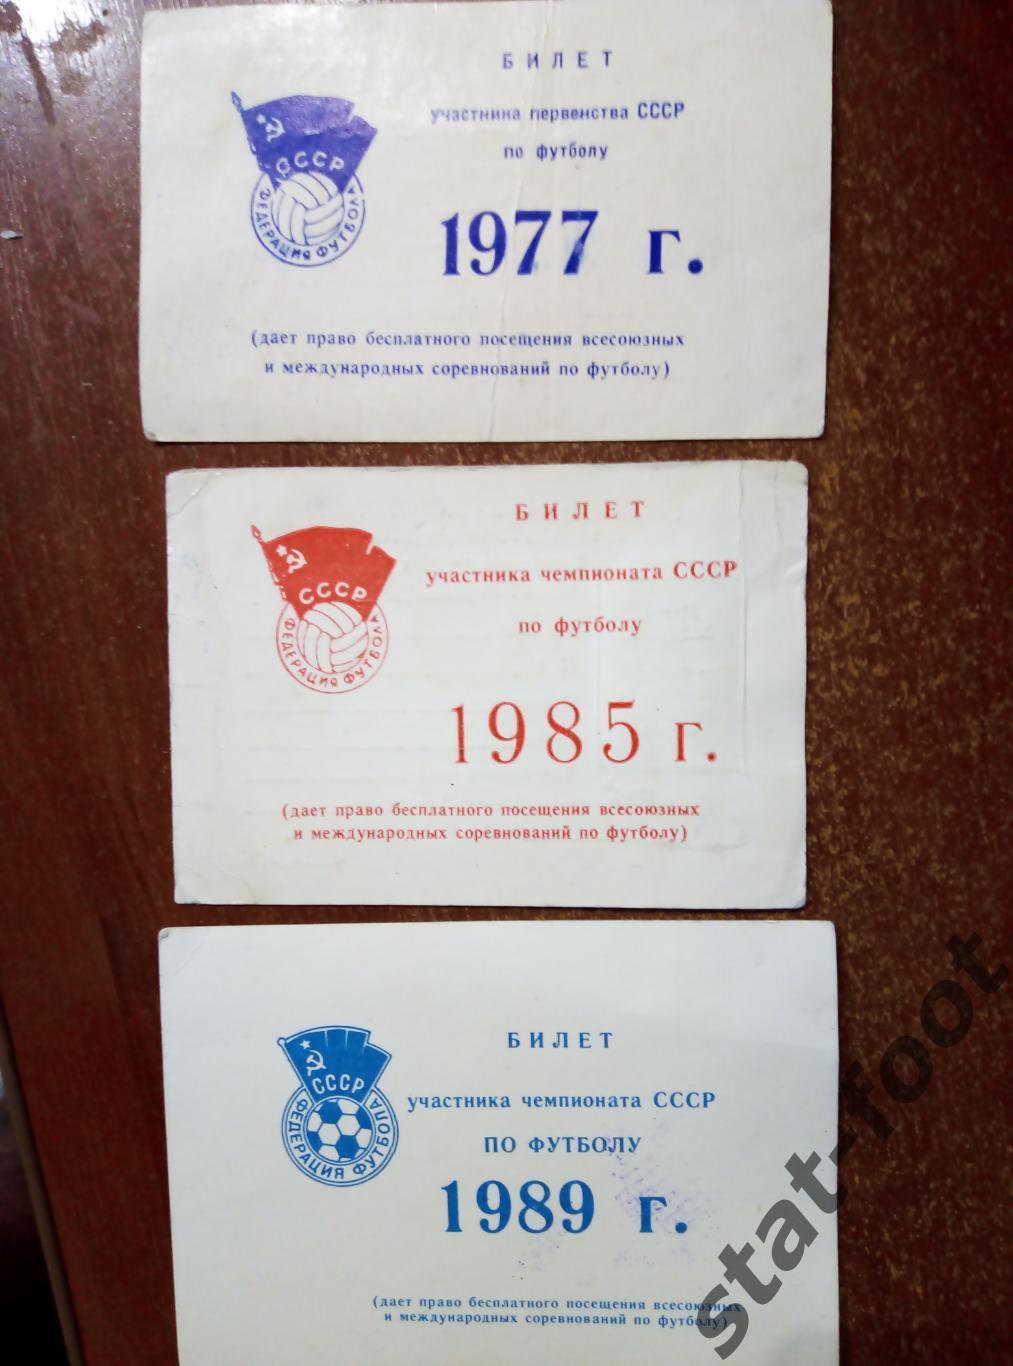 Билет участника первенства СССР по футболу 1977